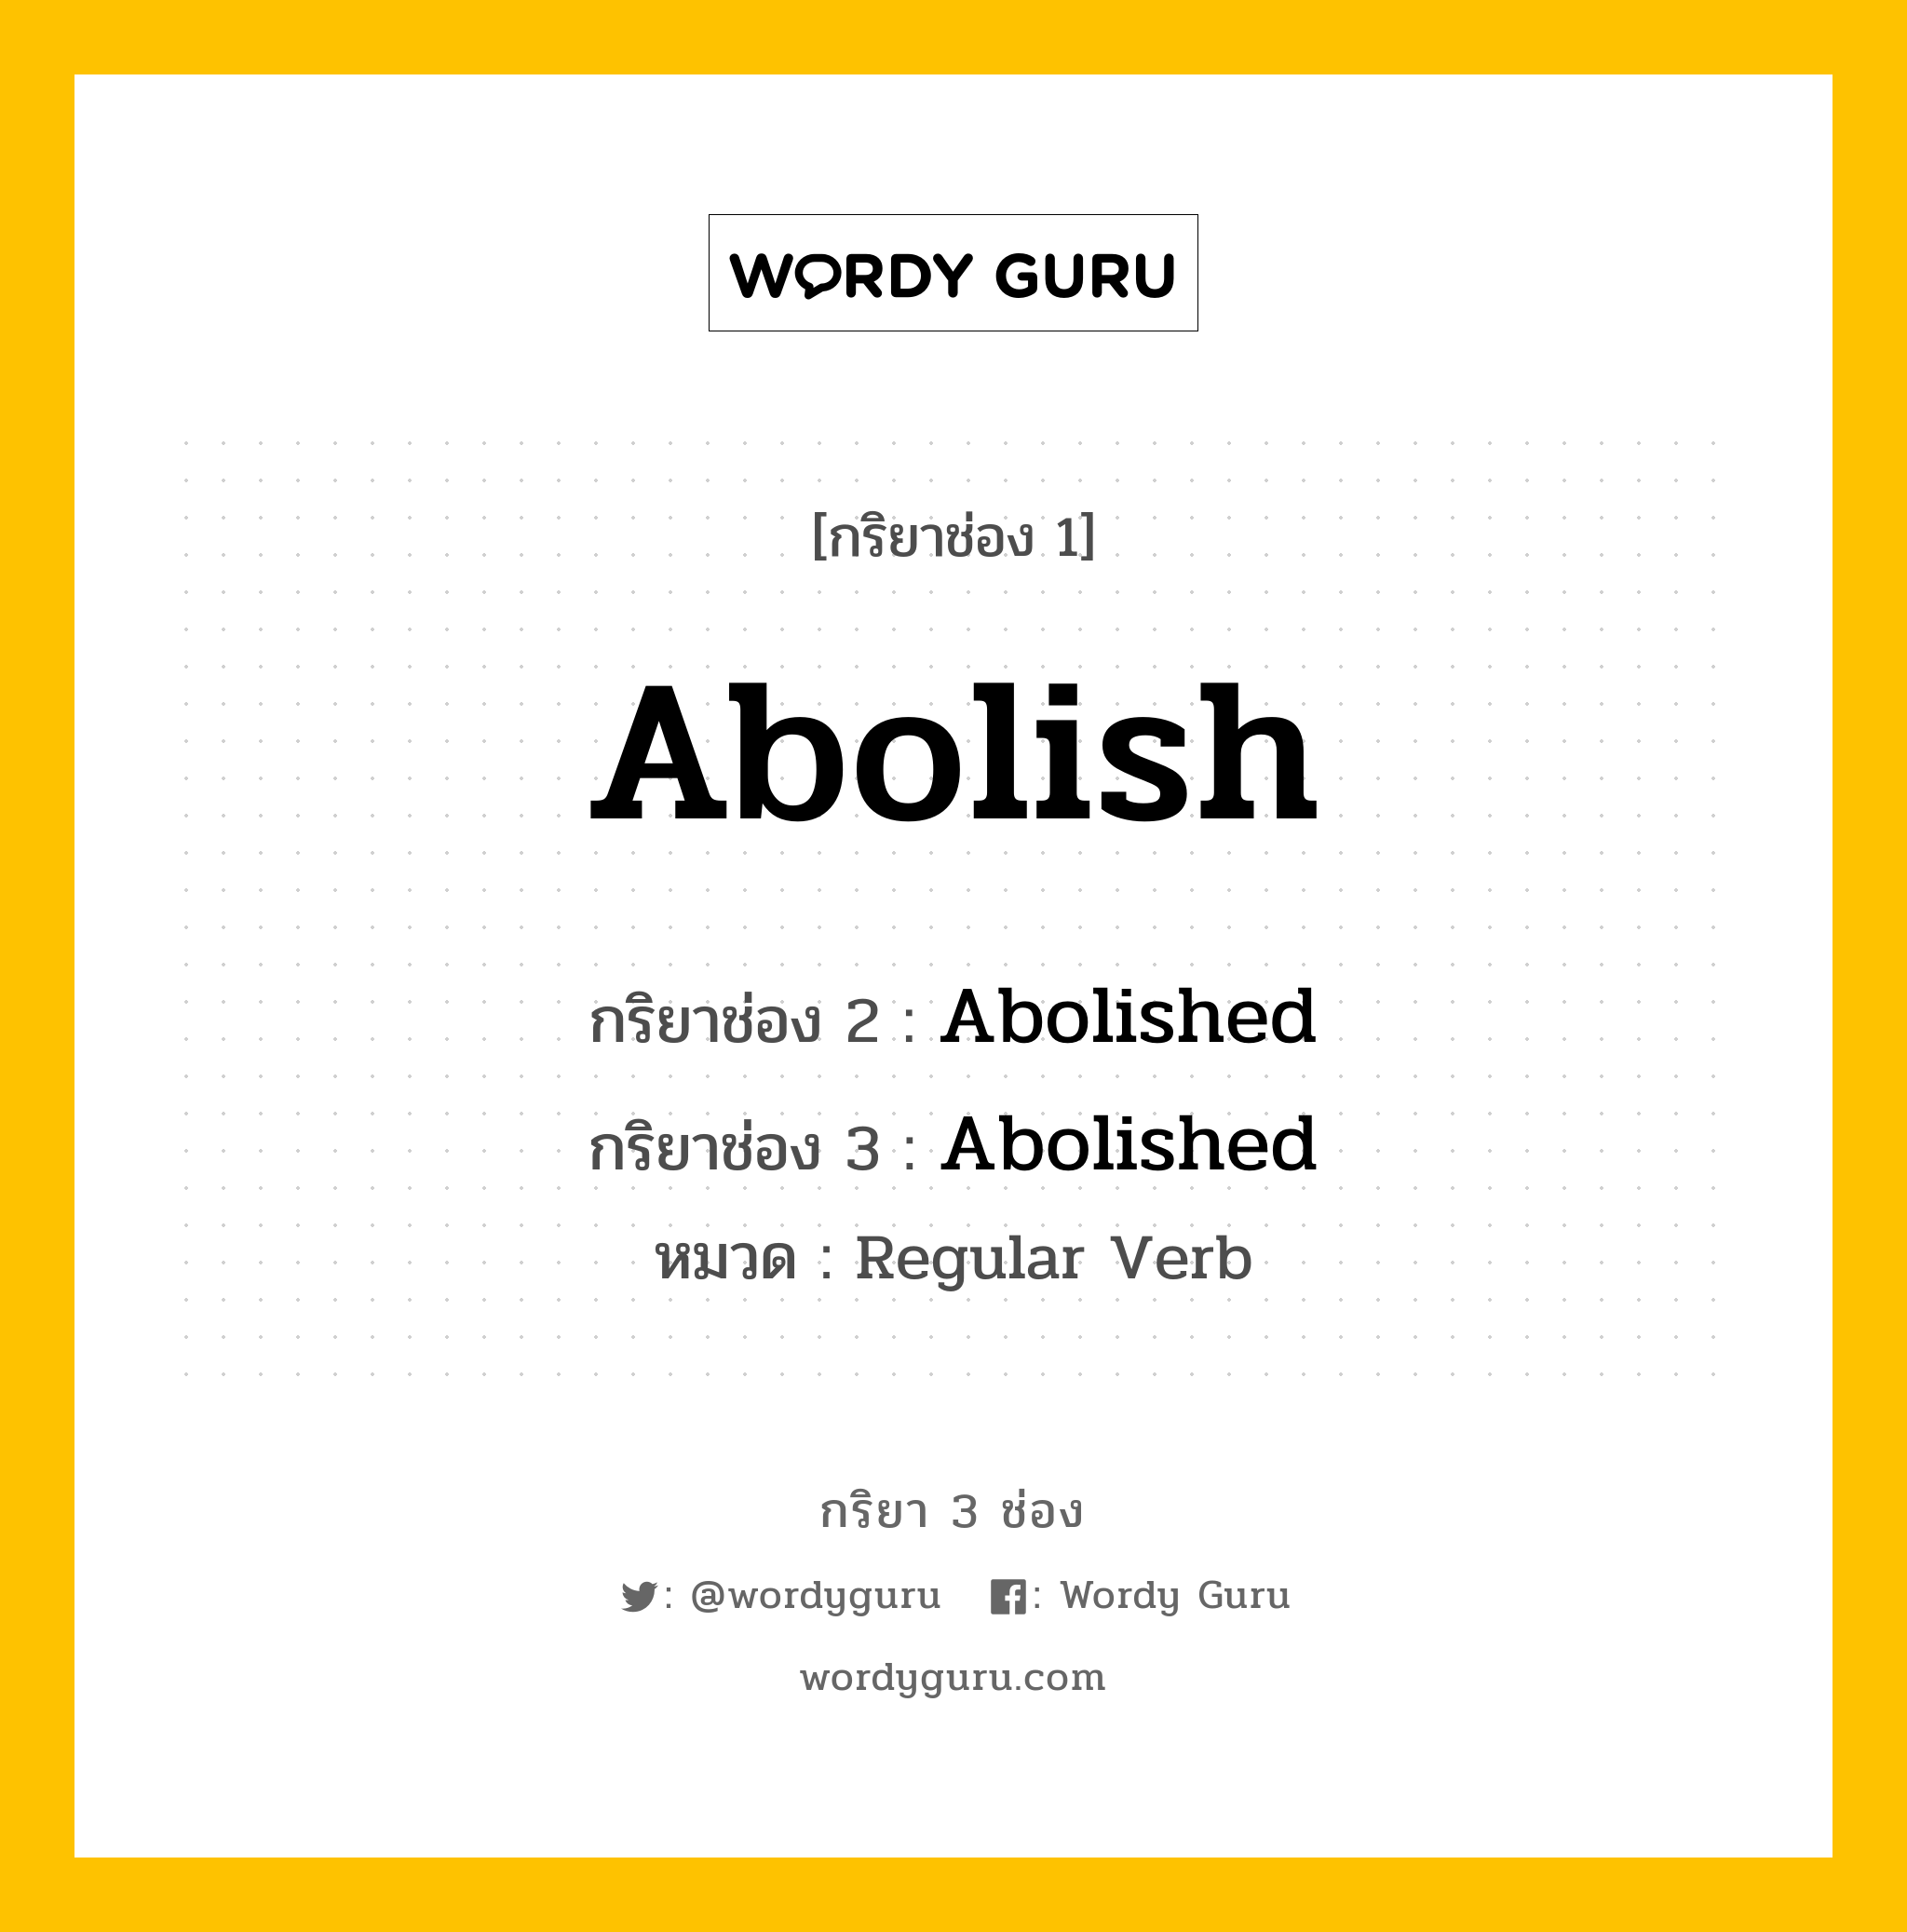 Abolish มีกริยา 3 ช่องอะไรบ้าง? คำศัพท์ในกลุ่มประเภท Regular Verb, กริยาช่อง 1 Abolish กริยาช่อง 2 Abolished กริยาช่อง 3 Abolished หมวด Regular Verb หมวด Regular Verb